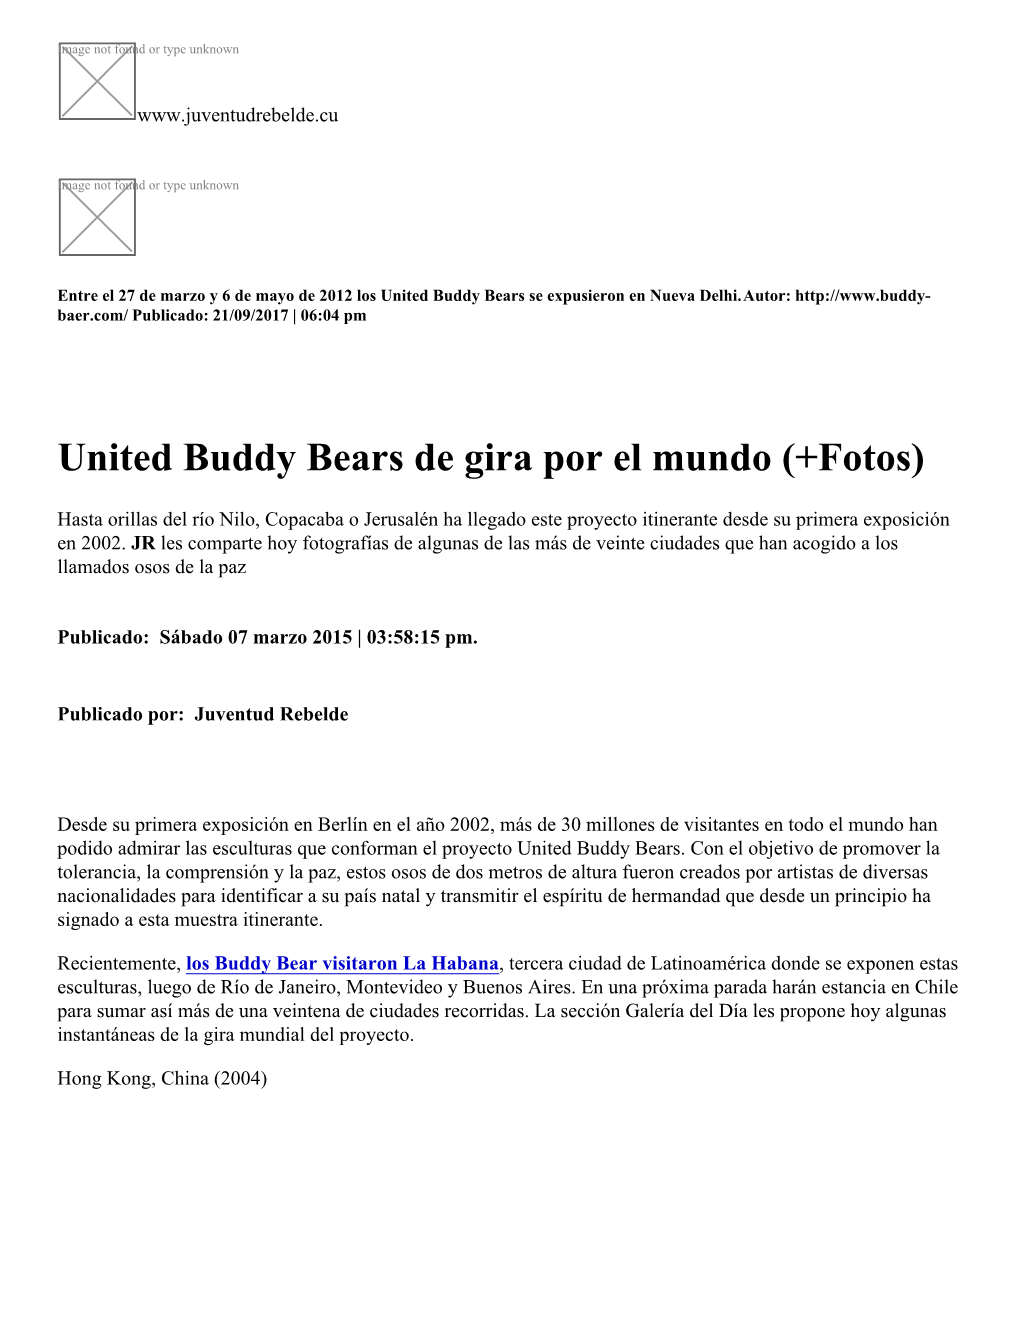 United Buddy Bears De Gira Por El Mundo (+Fotos)